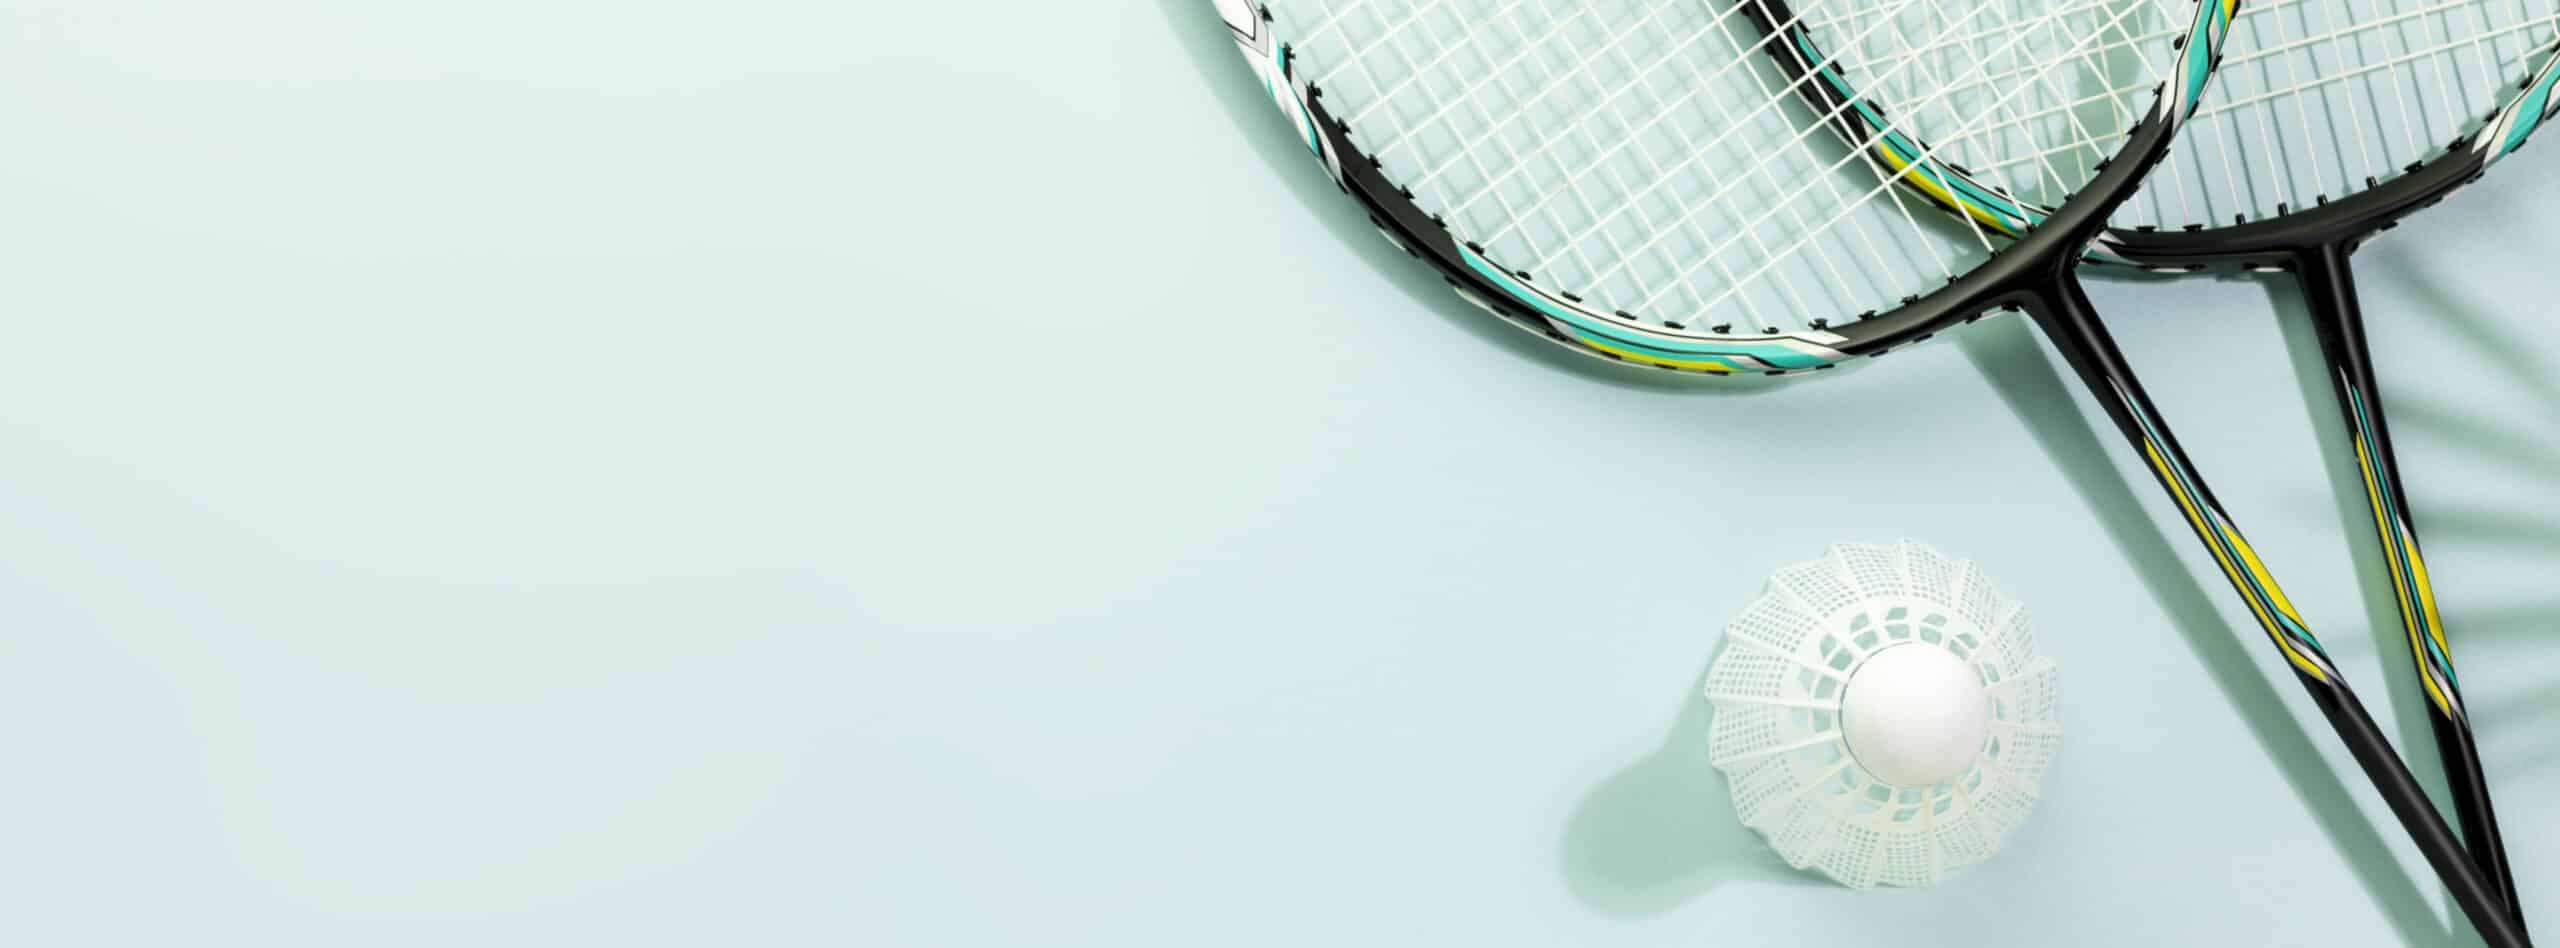 www.appr.com : Is it worth restringing a squash racket?